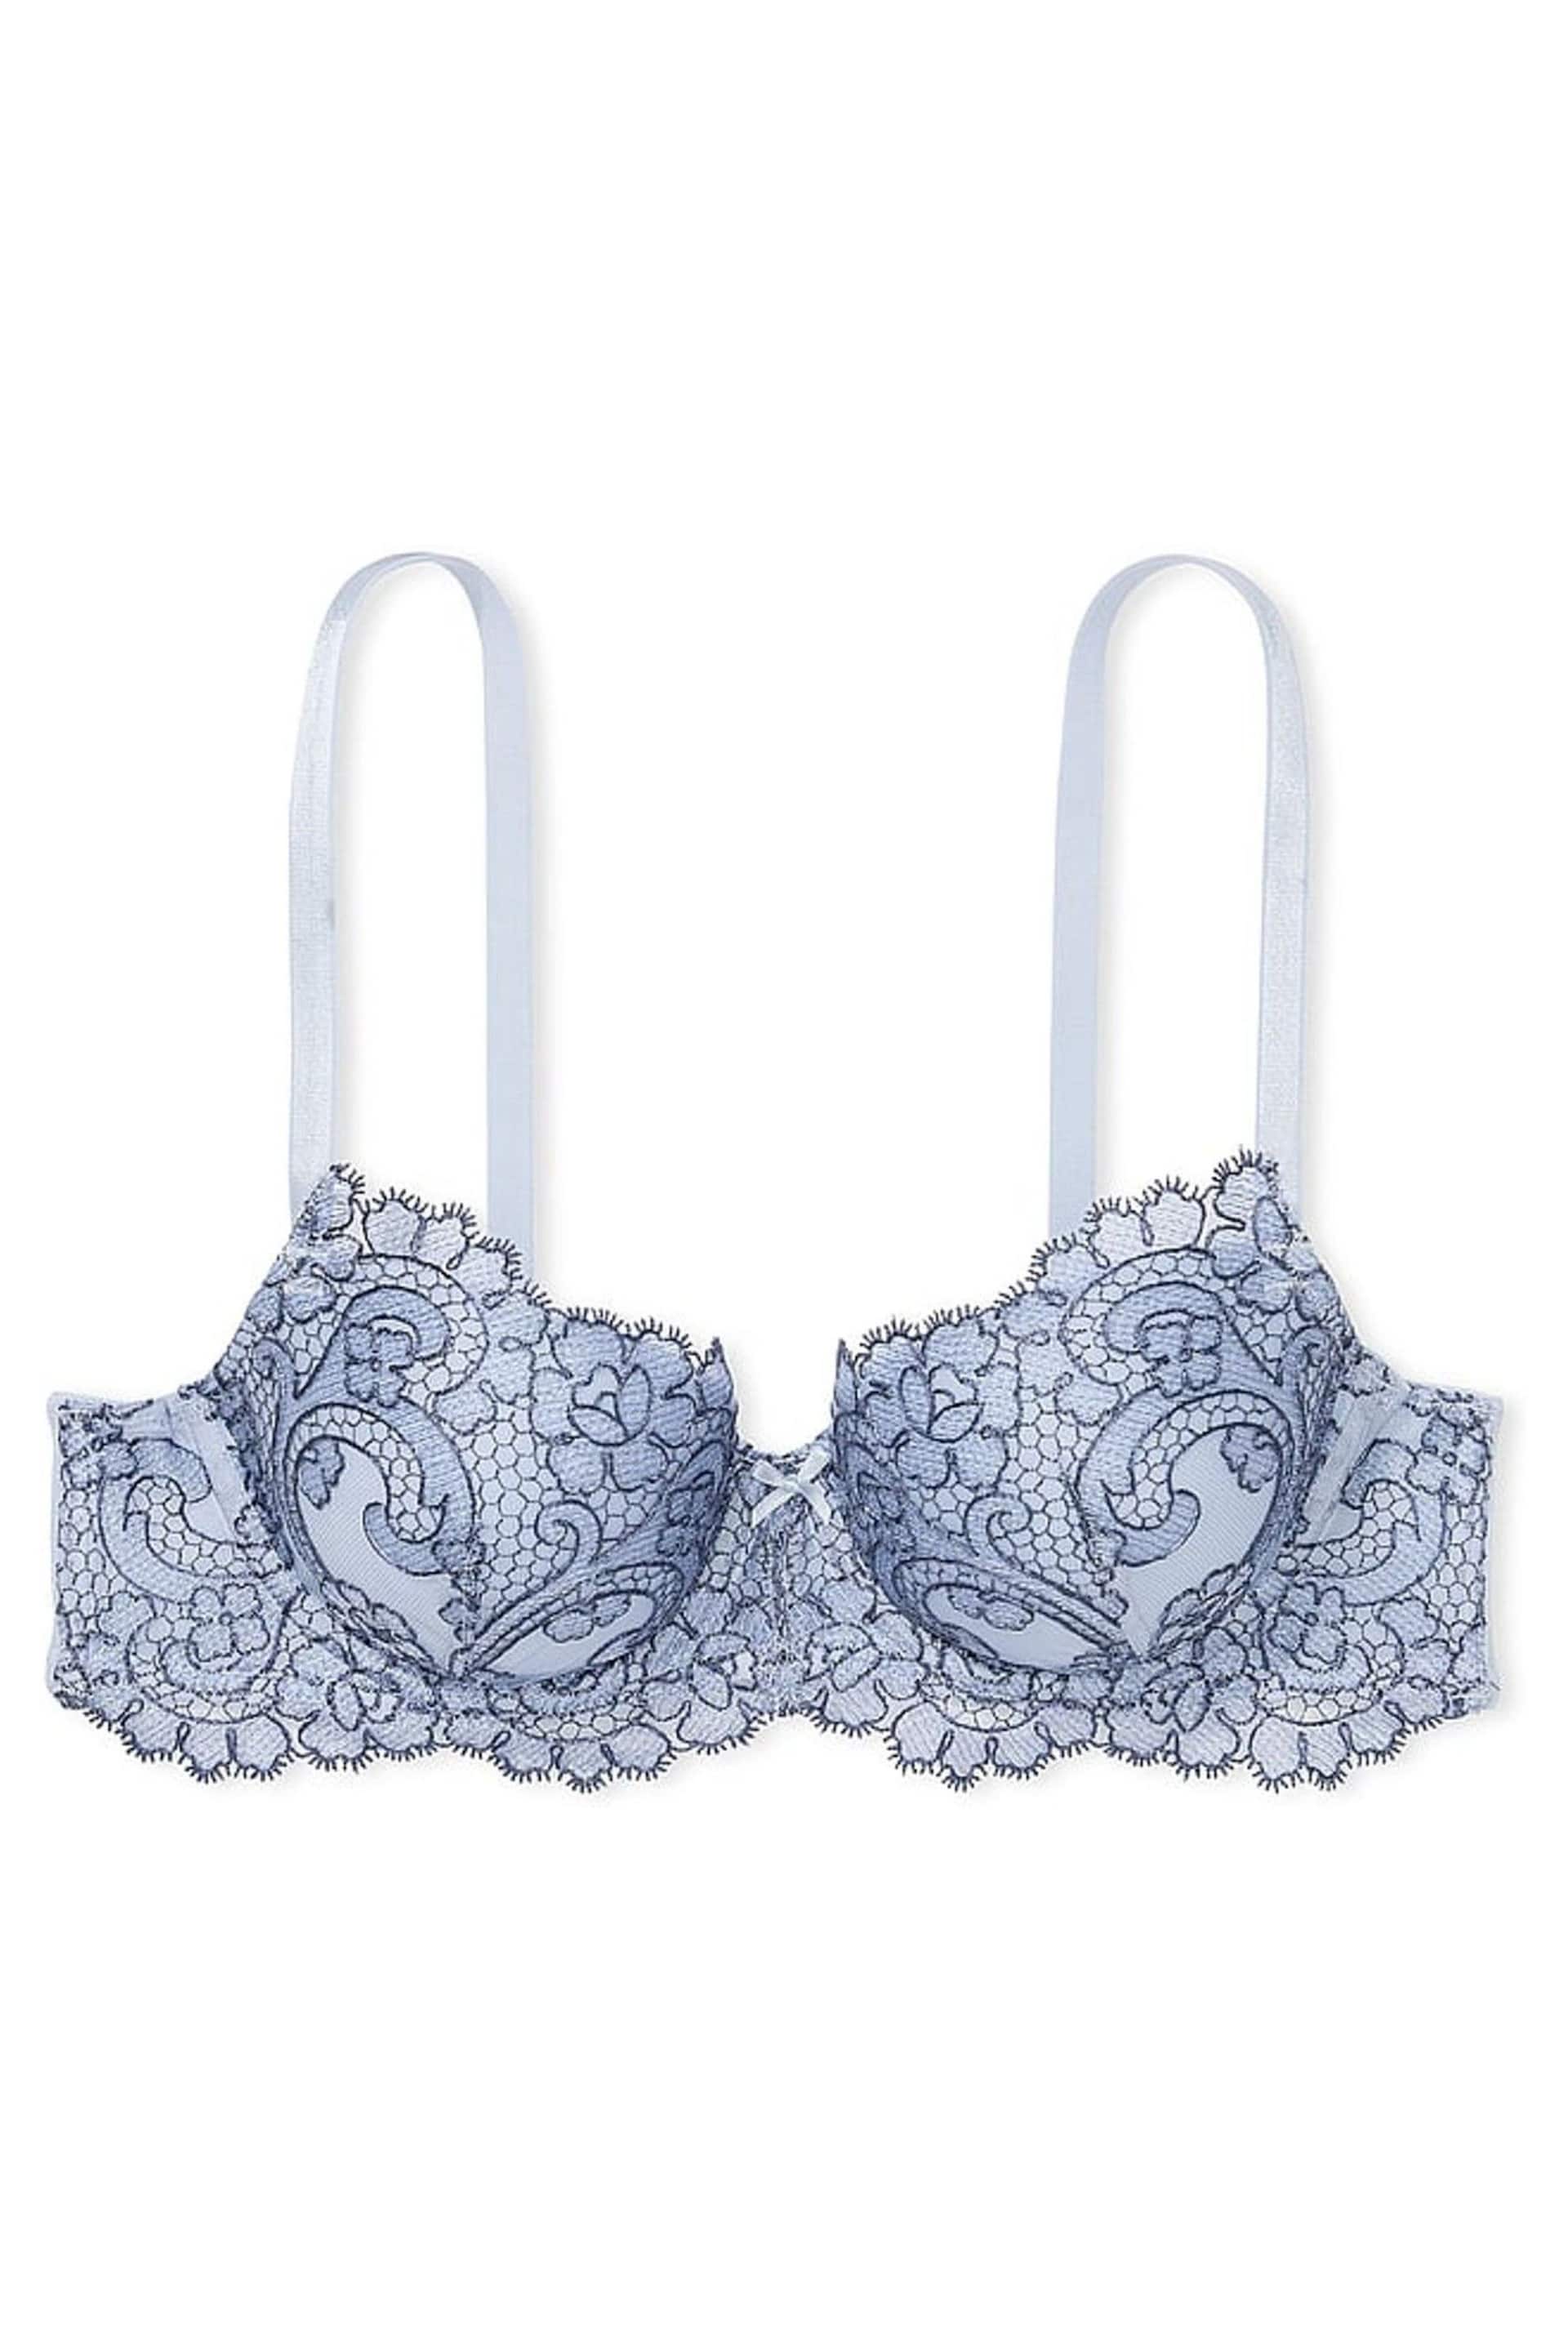 Victoria's Secret Blue Faded Denim Lightly Lined Demi Boho Floral Bra - Image 2 of 2